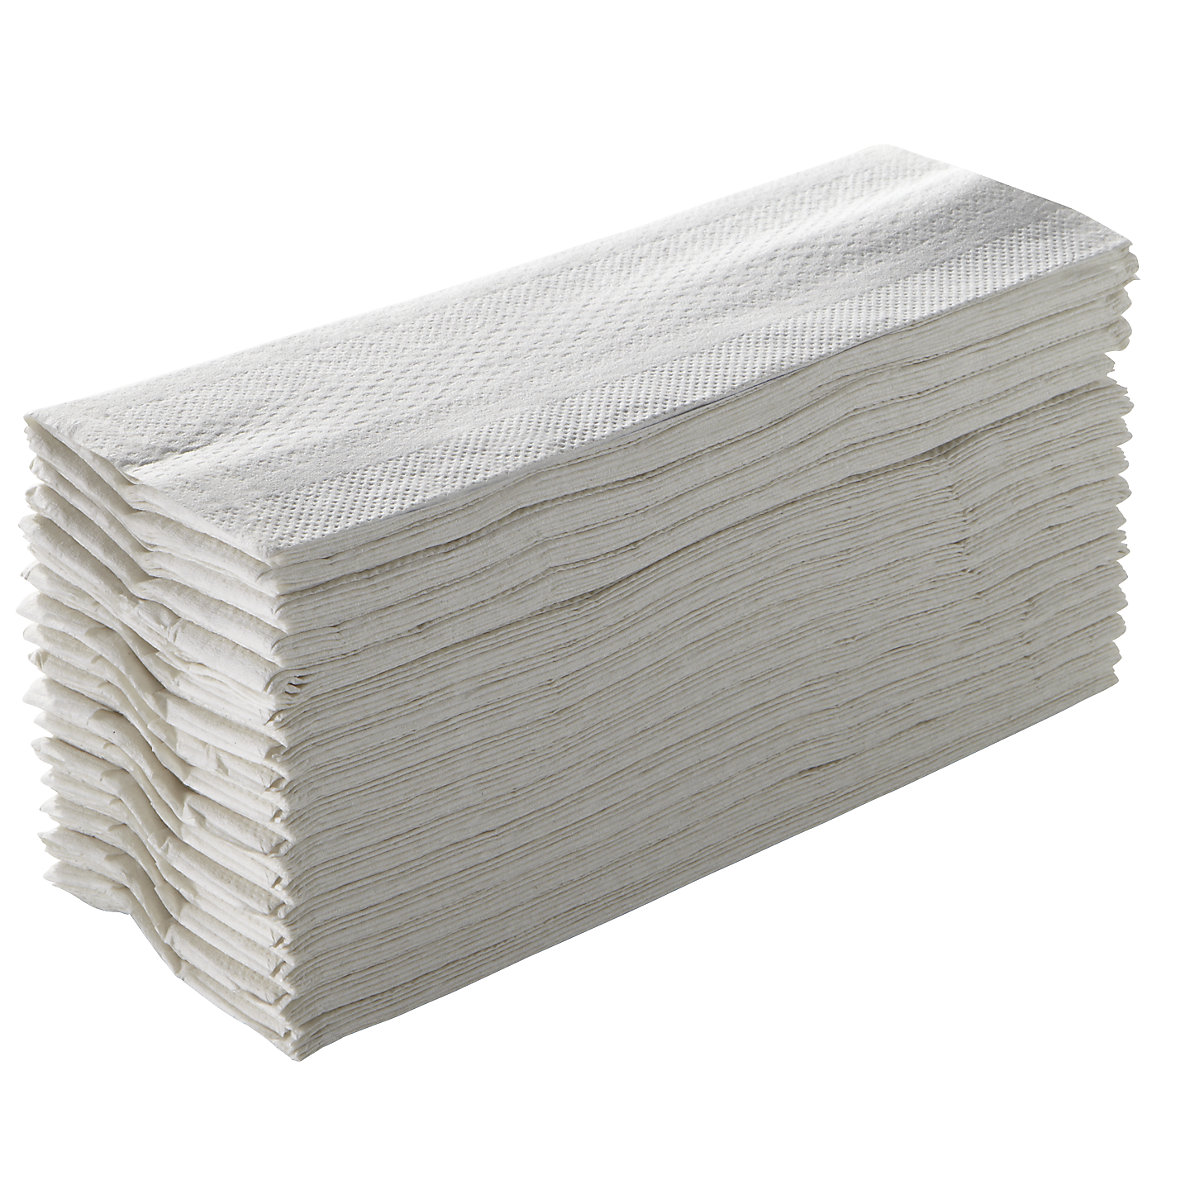 Serviettes pliées – TORK, tissu plié par couche, blanc, lot de 2560 serviettes, à partir de 4 lots